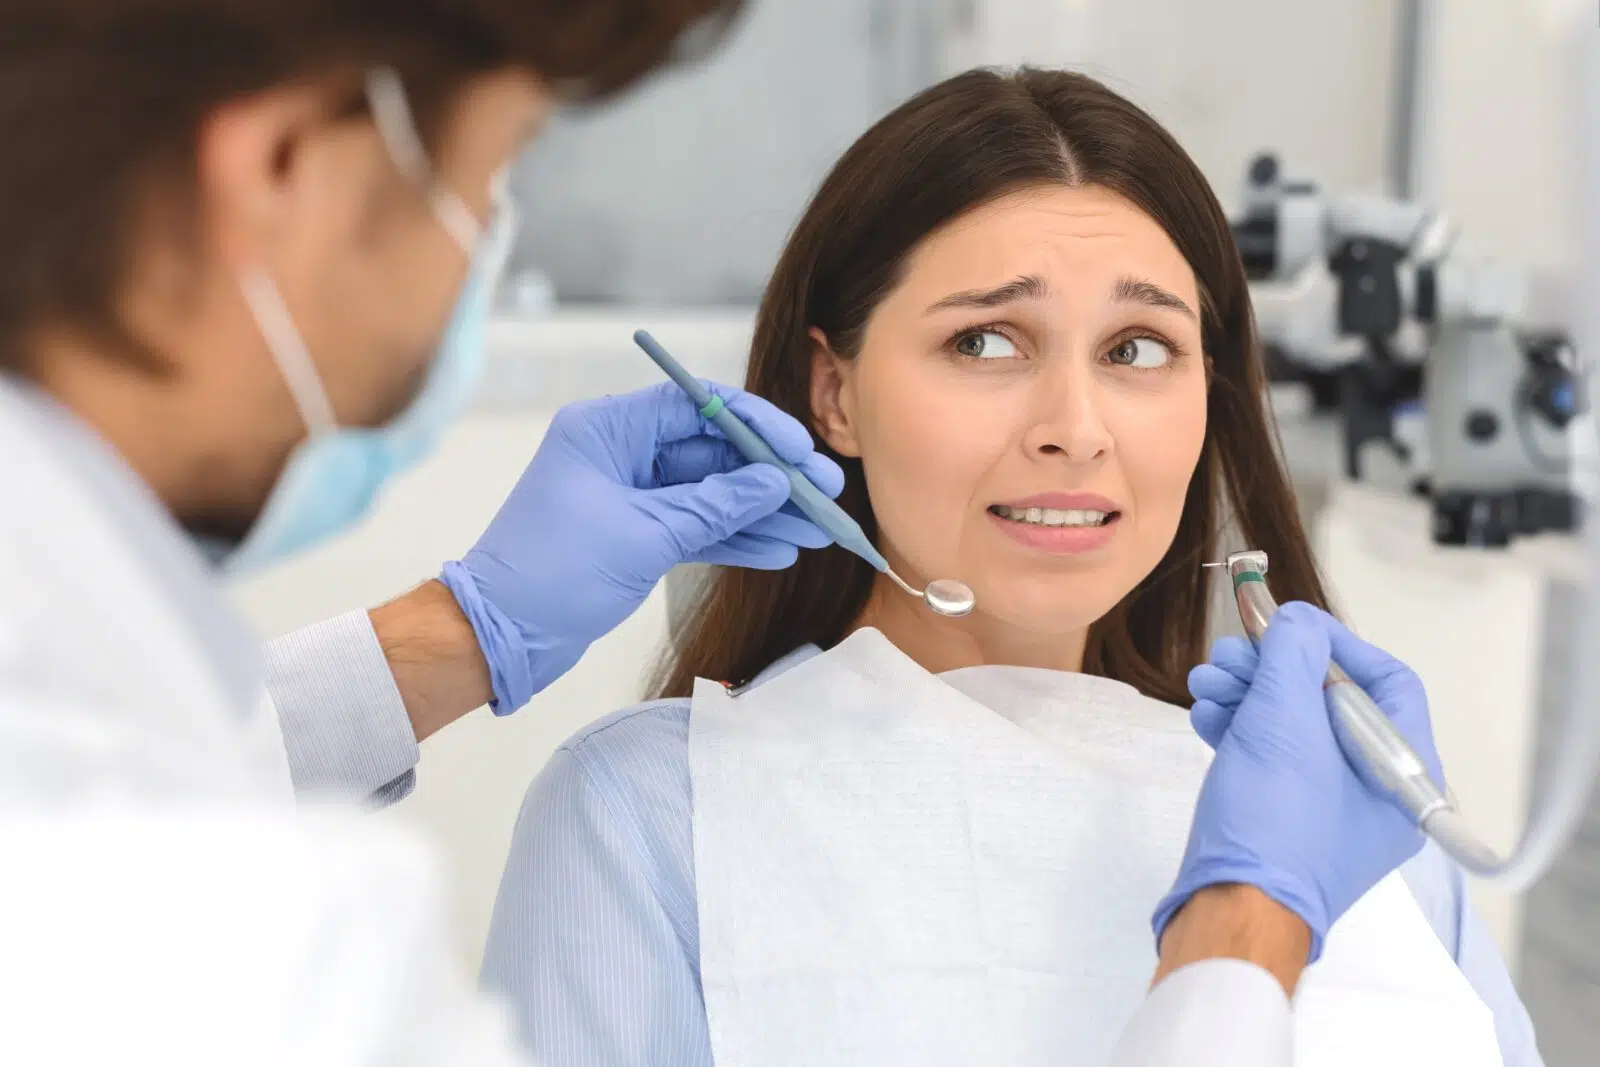 Strach przed dentystą - przestraszona kobieta na fotelu dentystycznym patrząca na stomatologa